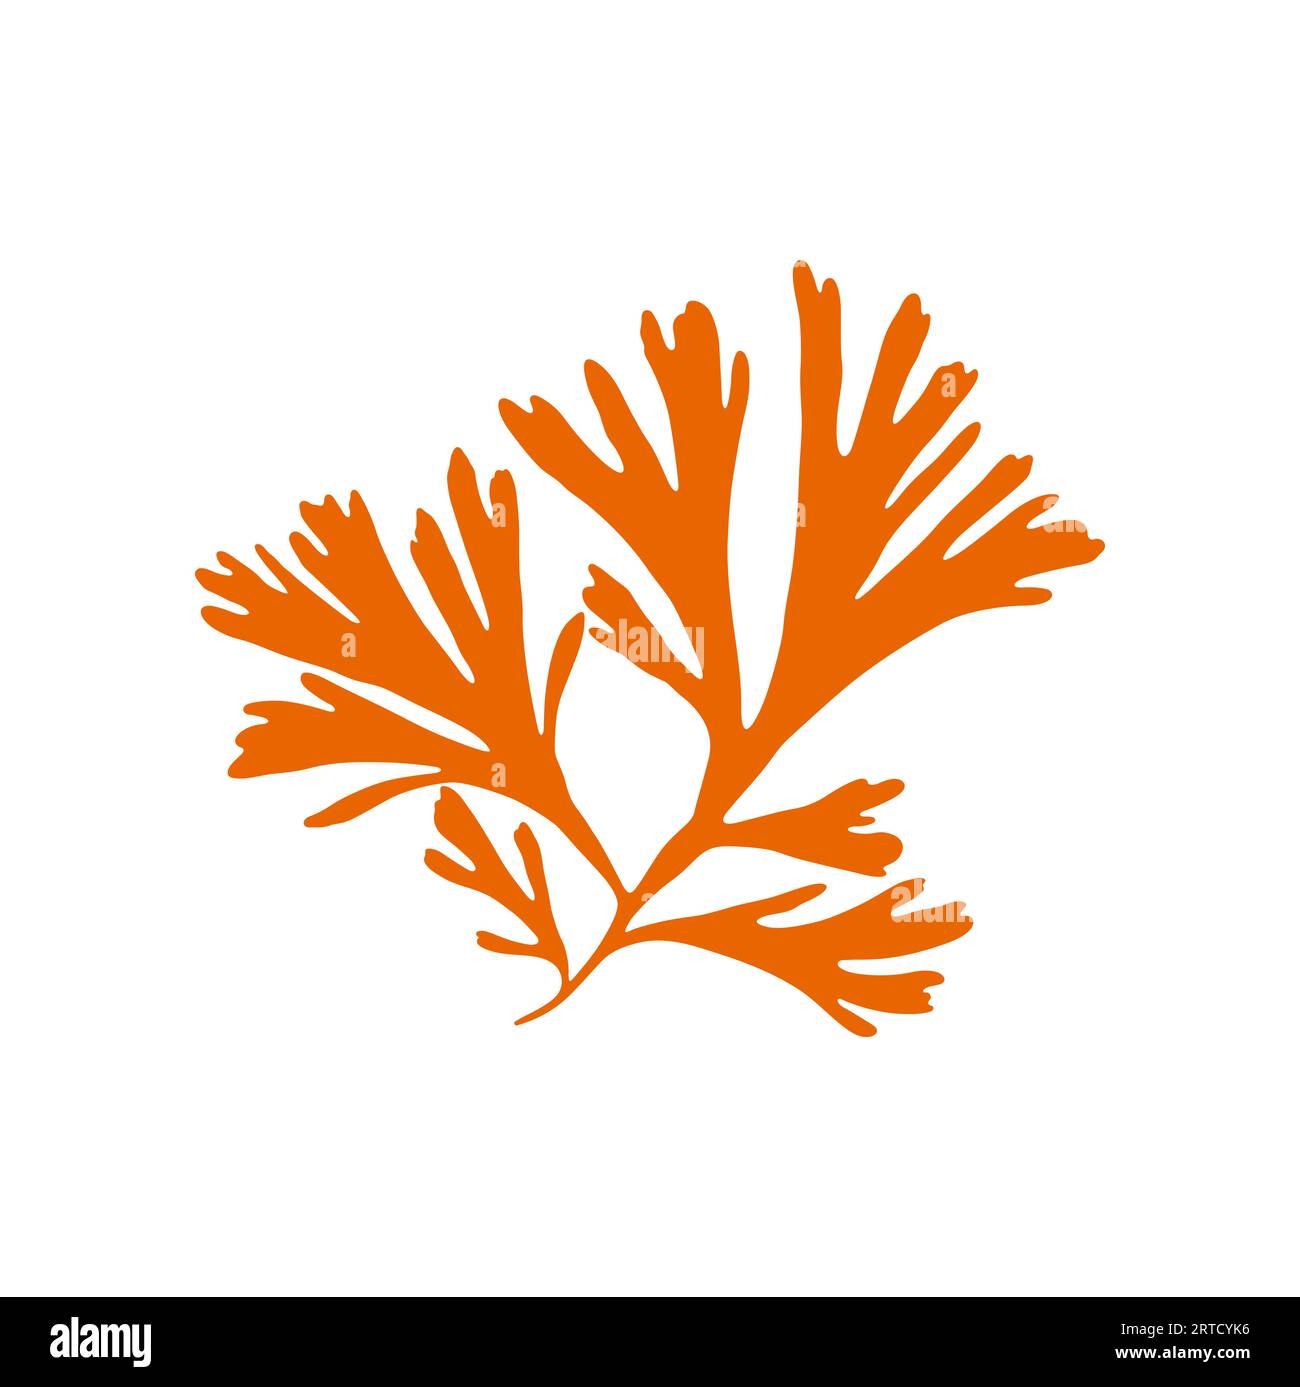 Corallo cespuglio morbido anemone isolato corallo galassico morbido. Icona di alghe gorgonie vettoriali arancioni. Rami di piante sottomarine, vasche e acquari decorativi marini Illustrazione Vettoriale